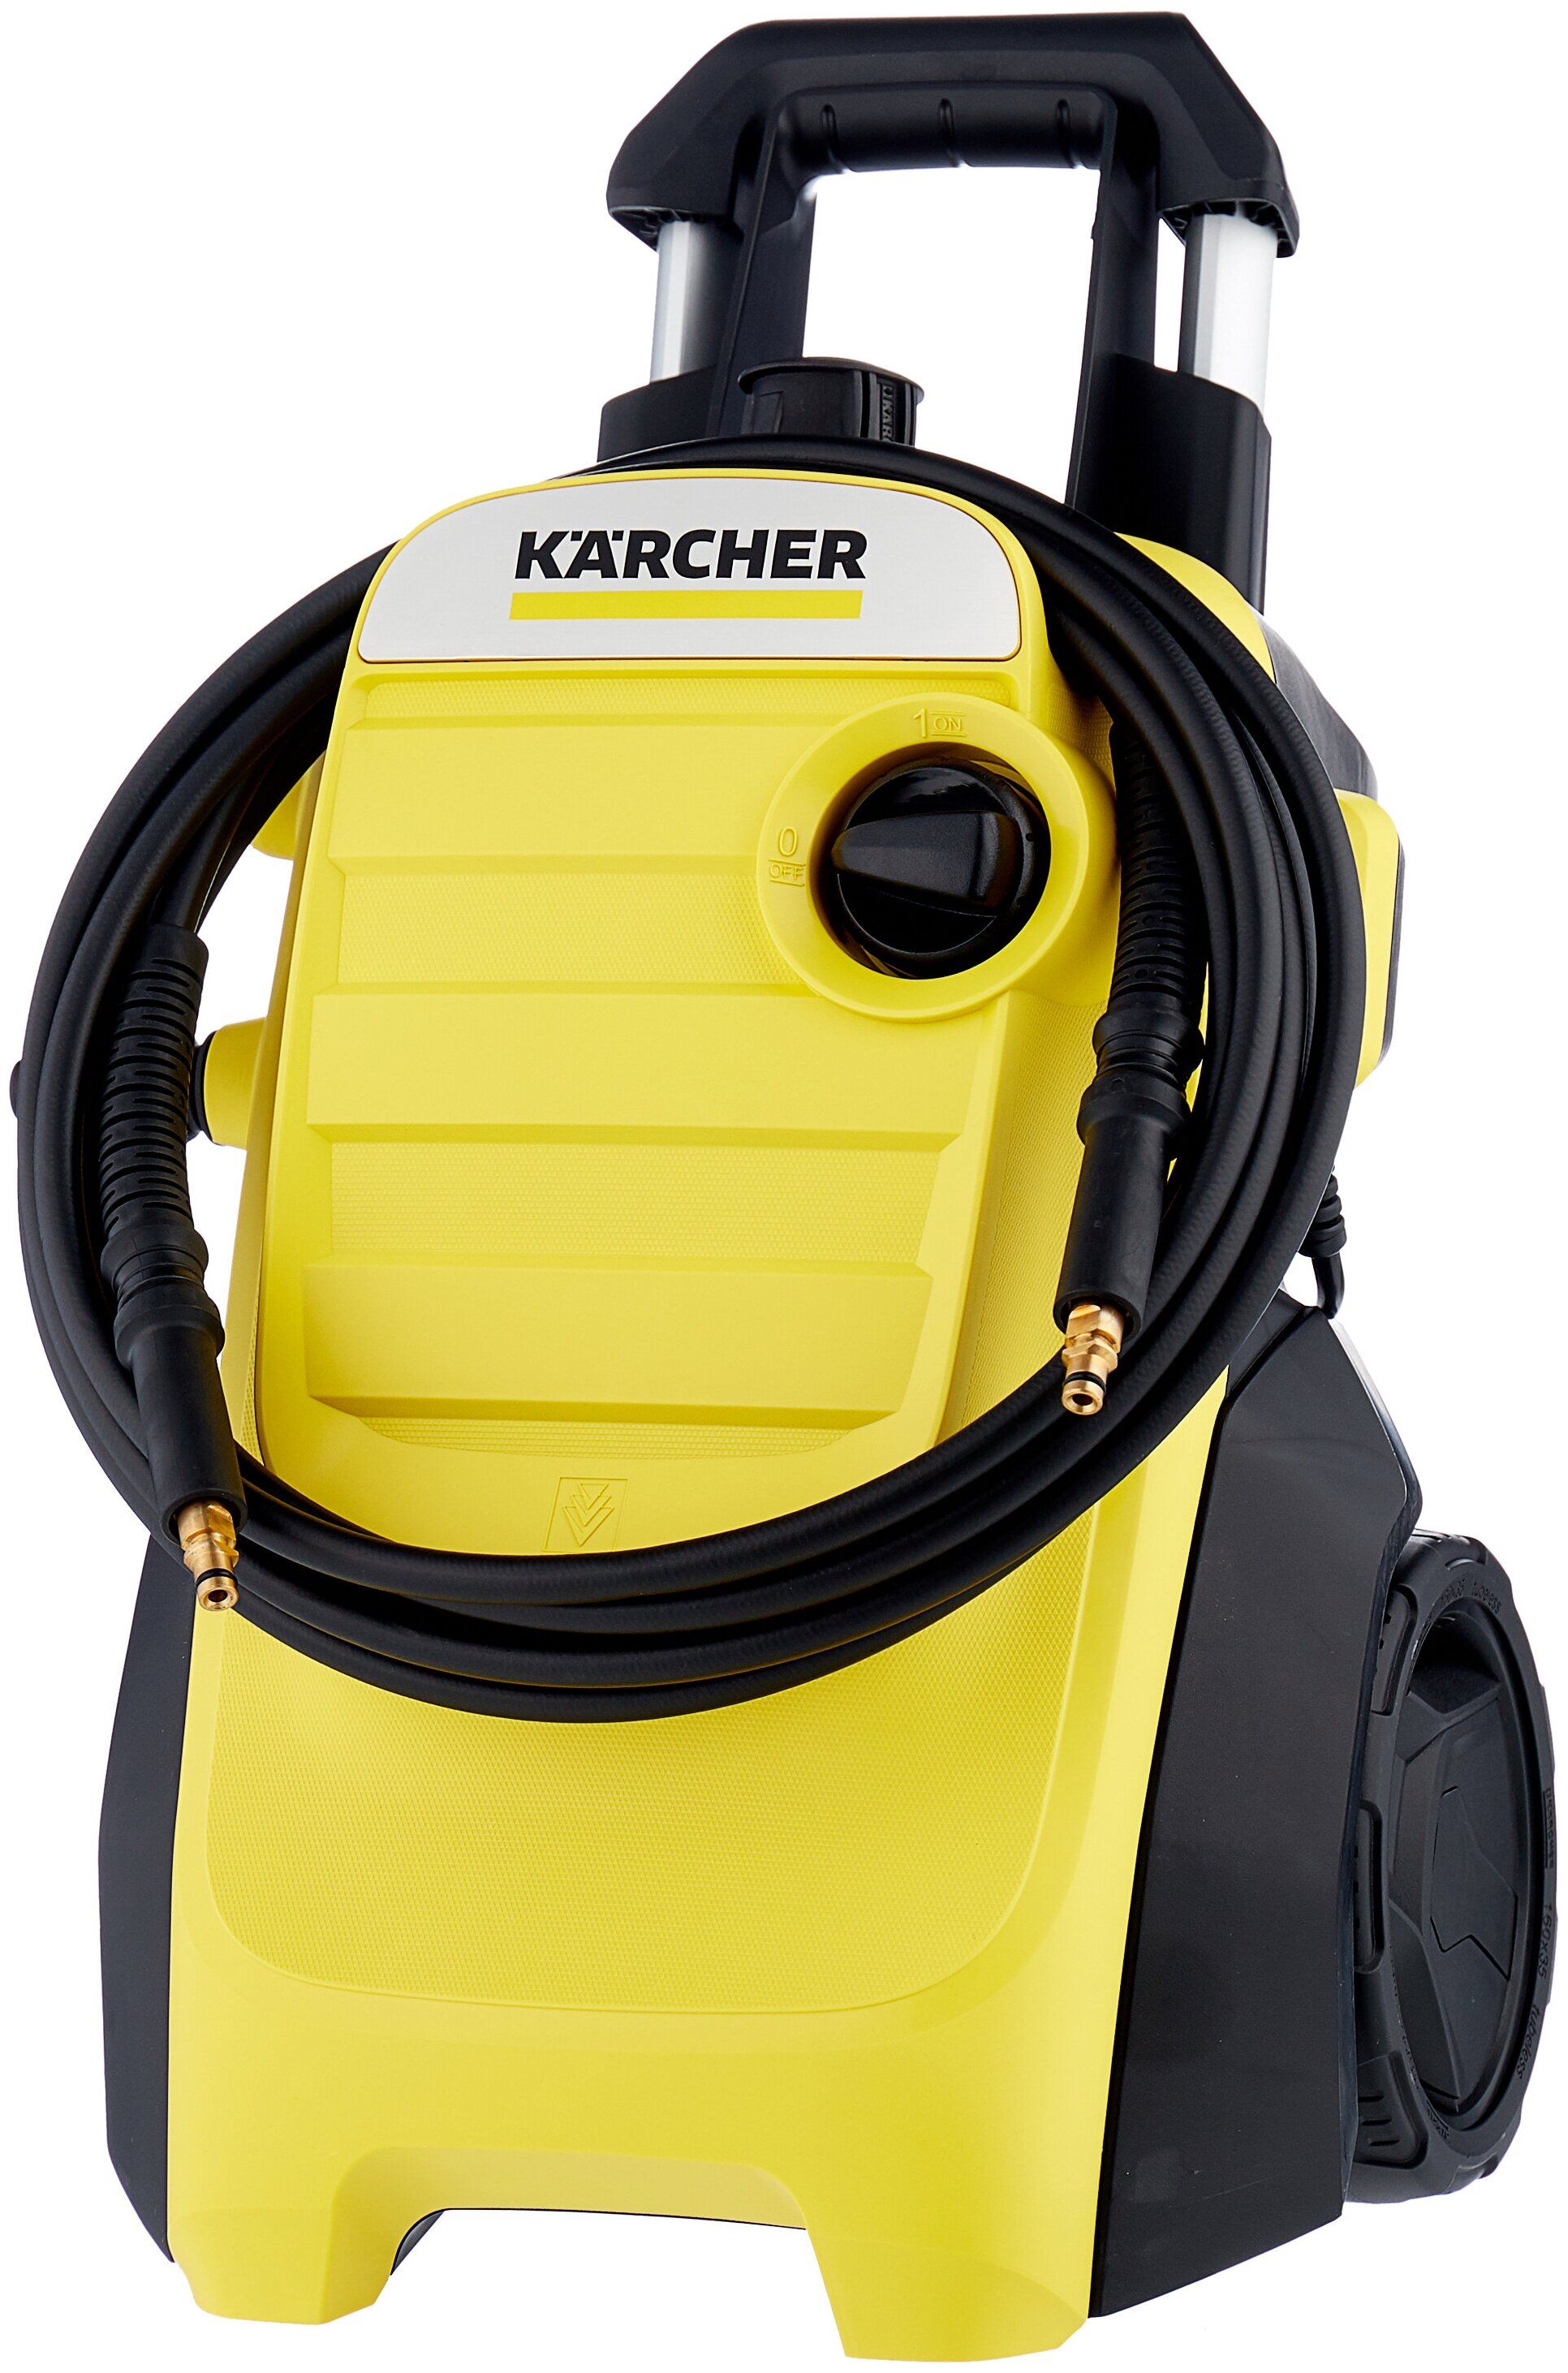 К 4 компакт. Мойка высокого давления Karcher k 4 Compact (1.637-500.0). Karcher 1.637-500.0. Karcher k 4 Compact um. Мойка высокого давления Karcher k 4 Compact (1.637-500.0), 130 бар, 420 л/ч.